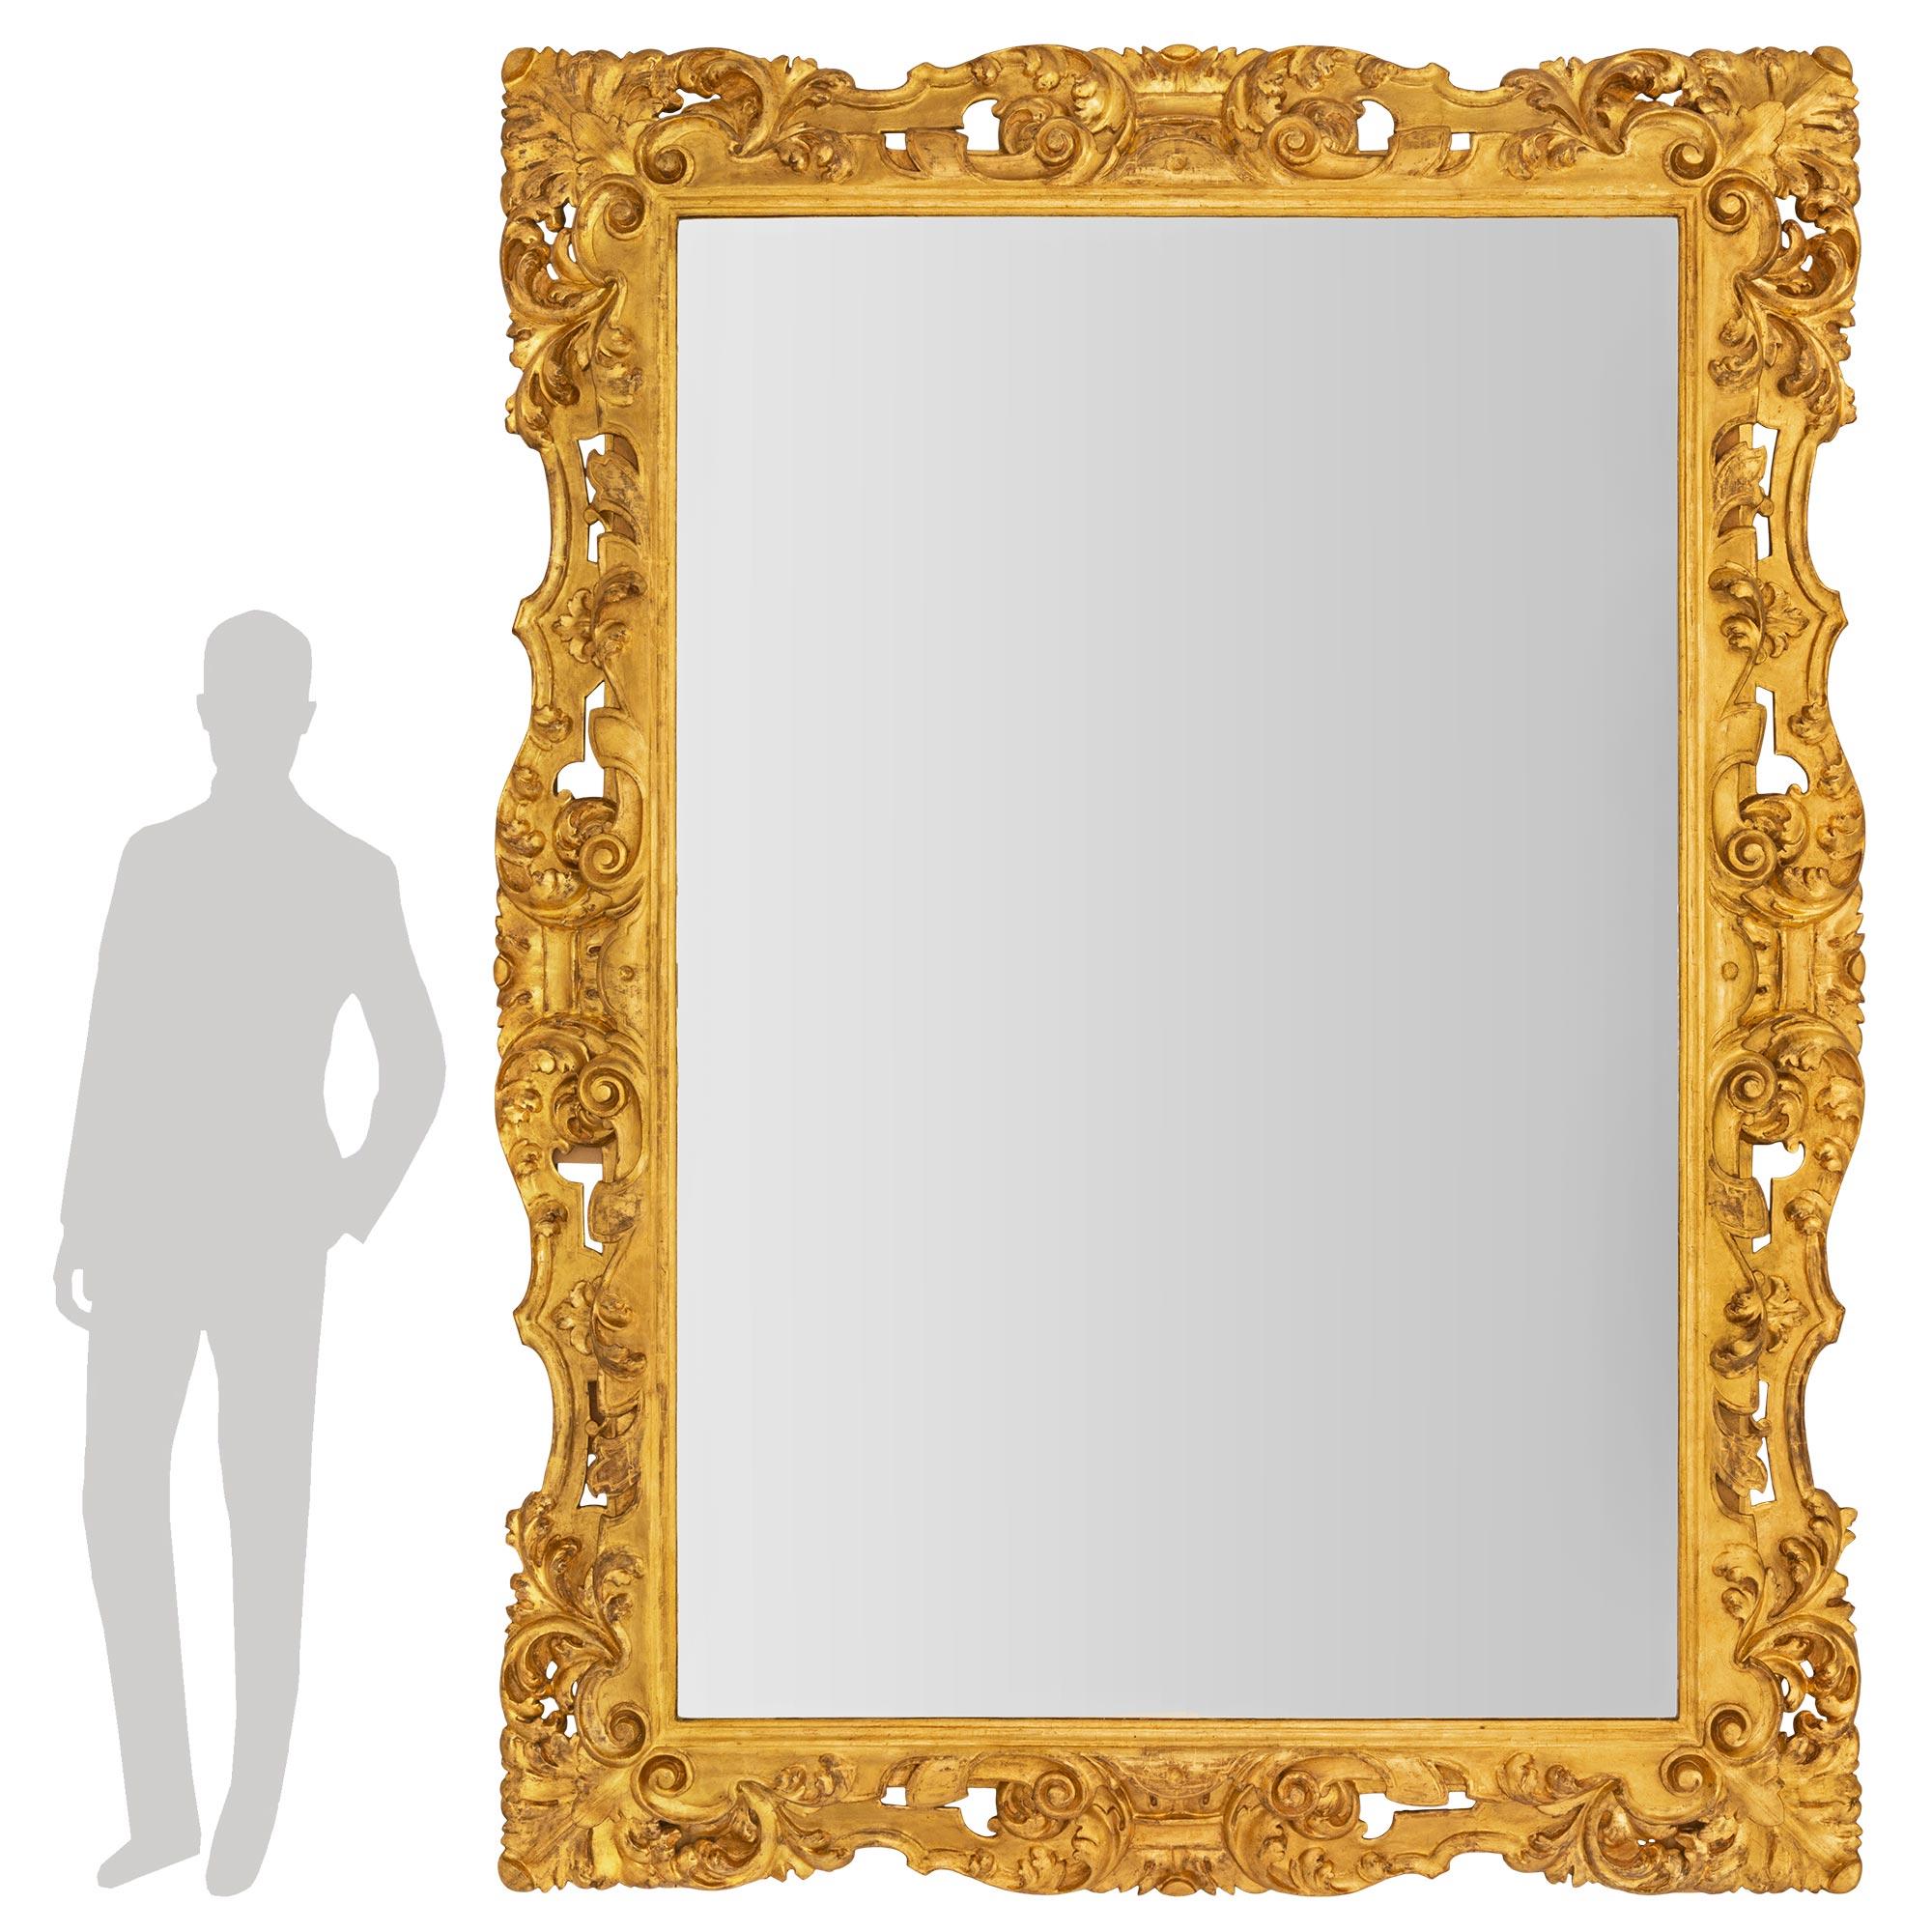 Un étonnant et très impressionnant miroir baroque italien du 19ème siècle en bois doré. Le miroir conserve sa plaque d'origine encadrée d'une fine bordure mouchetée. Le cadre présente un ensemble exceptionnel de beaux mouvements à volutes percées